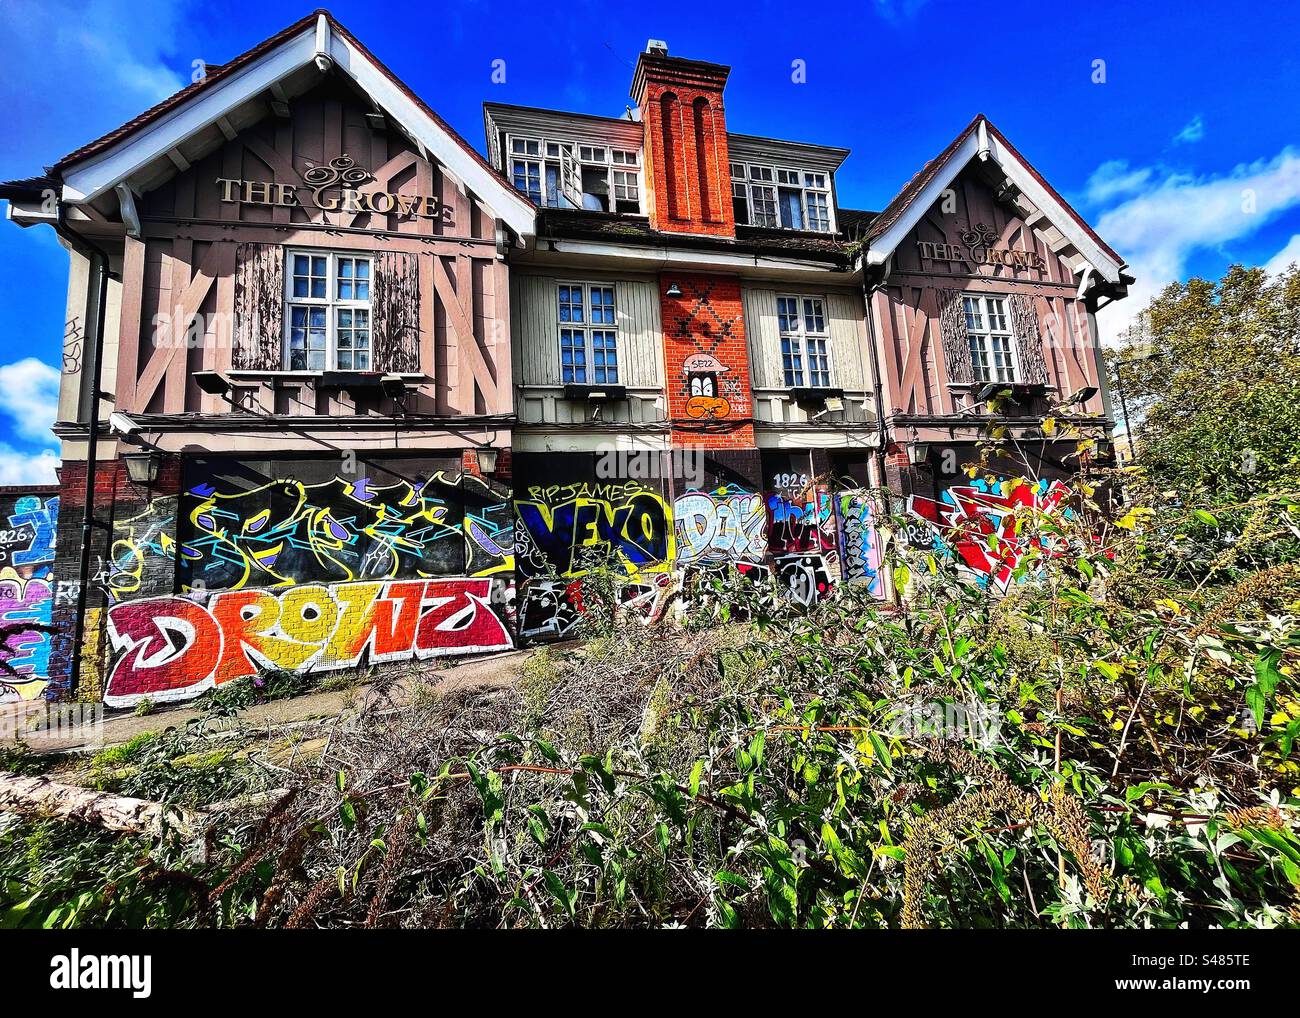 The Derelict, Grove Tavern 520 Lordship Lane, East Dulwich, Londra SE22. C'è stato un pub o una casa pubblica in questo sito per oltre 100 anni. L'edificio ha graffiti e erbacce che crescono intorno ad esso Foto Stock